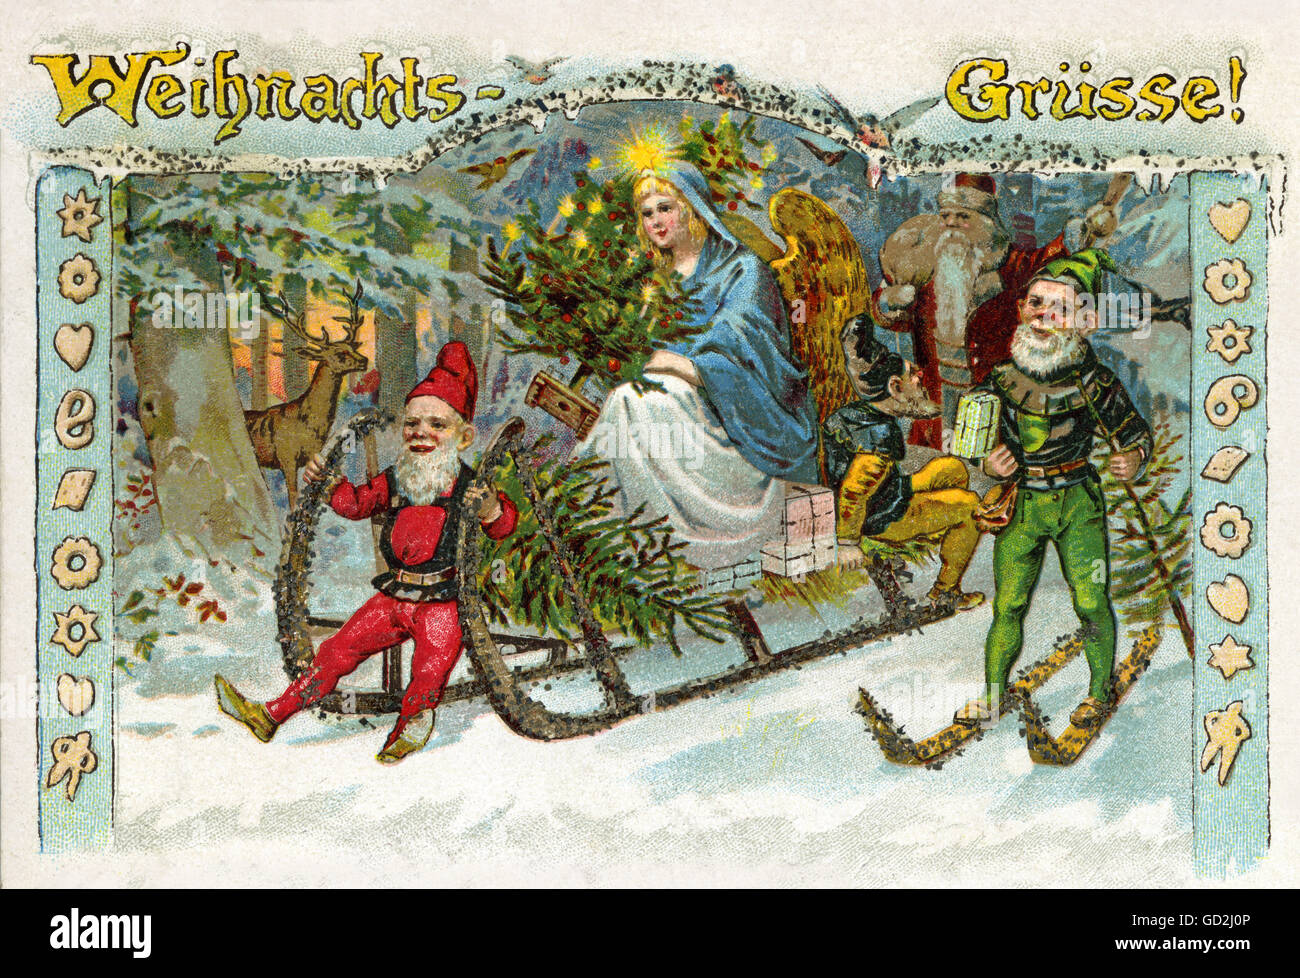 Weihnachten, Weihnachtsgrüße, das Christkind fährt nachts auf einem Schlitten durch den schneebedeckten Wald, begleitet von Zwergen und Vater Weihnachten, bringen Weihnachtsbäume und Geschenke, Deutschland, 1900, Winter, Schnee, pixy, Grüße, Gruß, Postkarte, Postkarte, Postkarten, Postkarten, Weihnachtskarte, senden am Heiligabend, 24. Dezember 1900,Heiliger Abend,Tradition,Traditionen,traditionell,Feier,festlich,festlich,festlich,sehr dekorativ,Illustration,Litho,Lithographie,Jahrhundertwende,Tom Daumen,wight,Zwerg,Zwerge,Zwerge,Milbe,pi,zusätzliche-Rechte-Clearences-nicht verfügbar Stockfoto